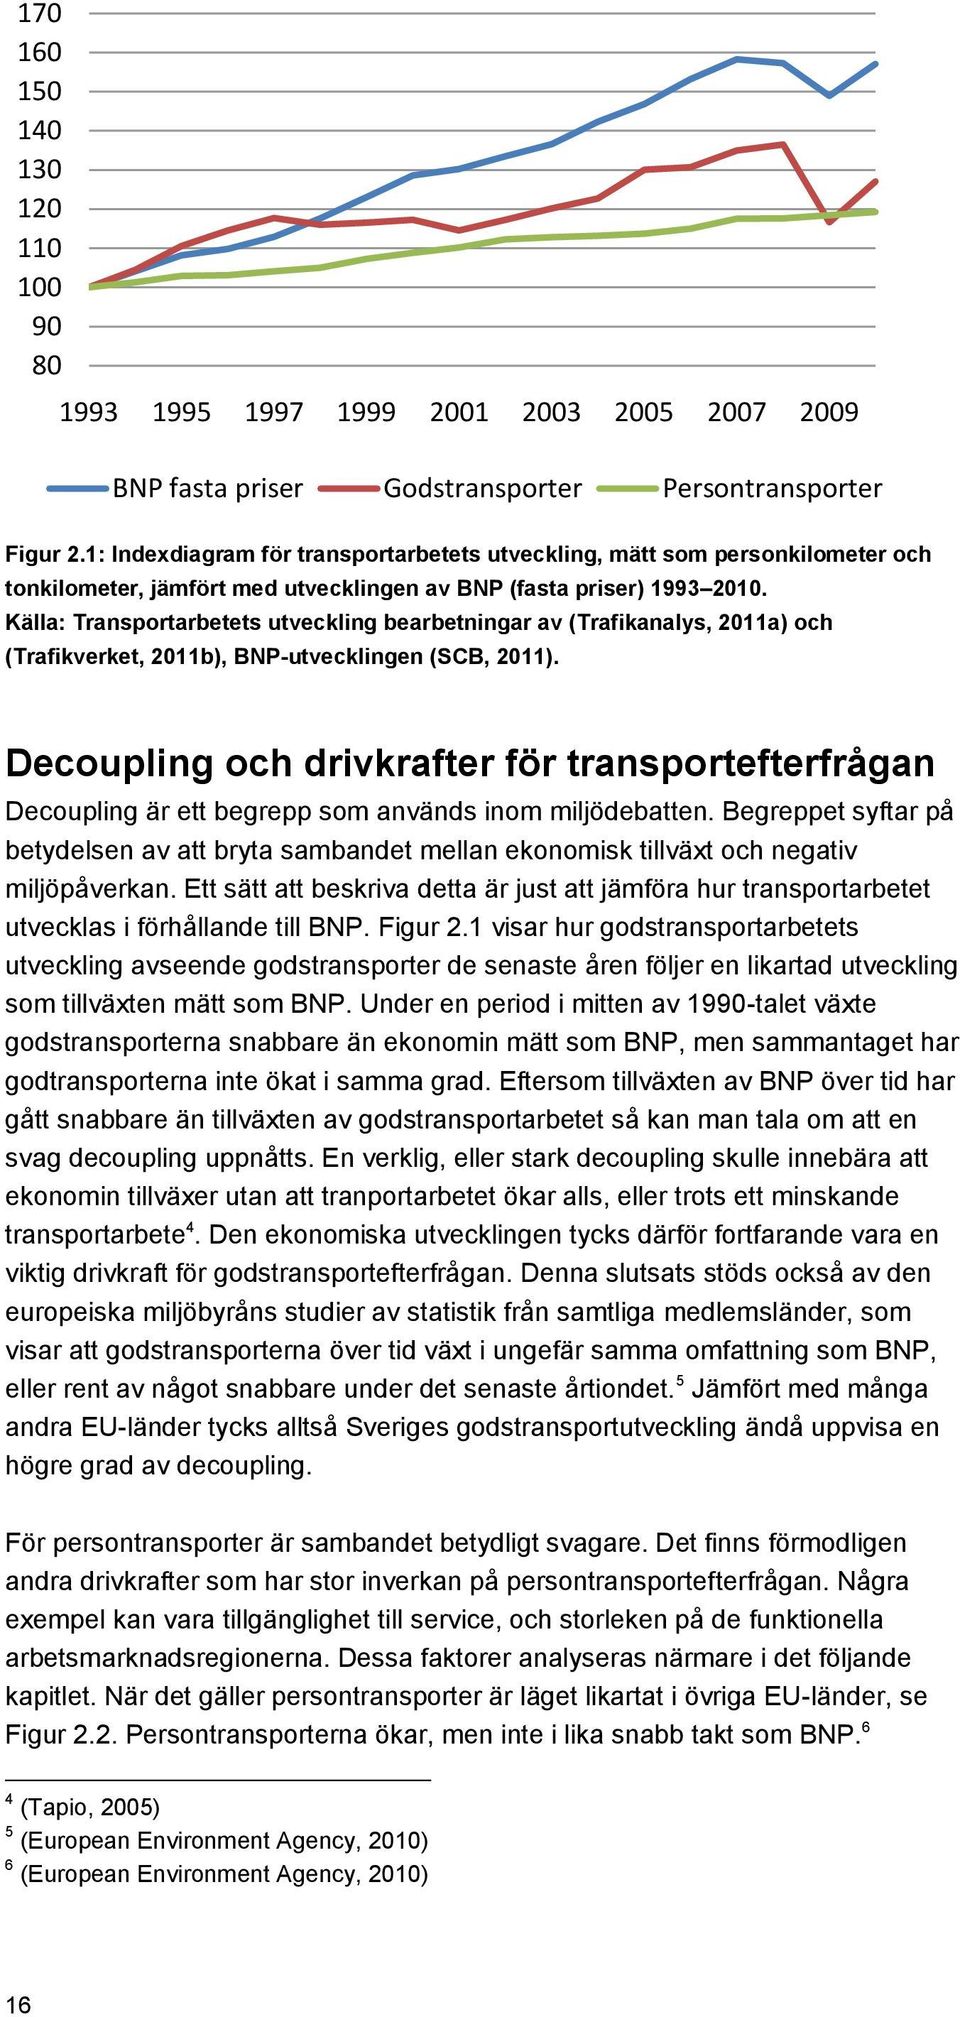 Källa: Transportarbetets utveckling bearbetningar av (Trafikanalys, 2011a) och (Trafikverket, 2011b), BNP-utvecklingen (SCB, 2011).